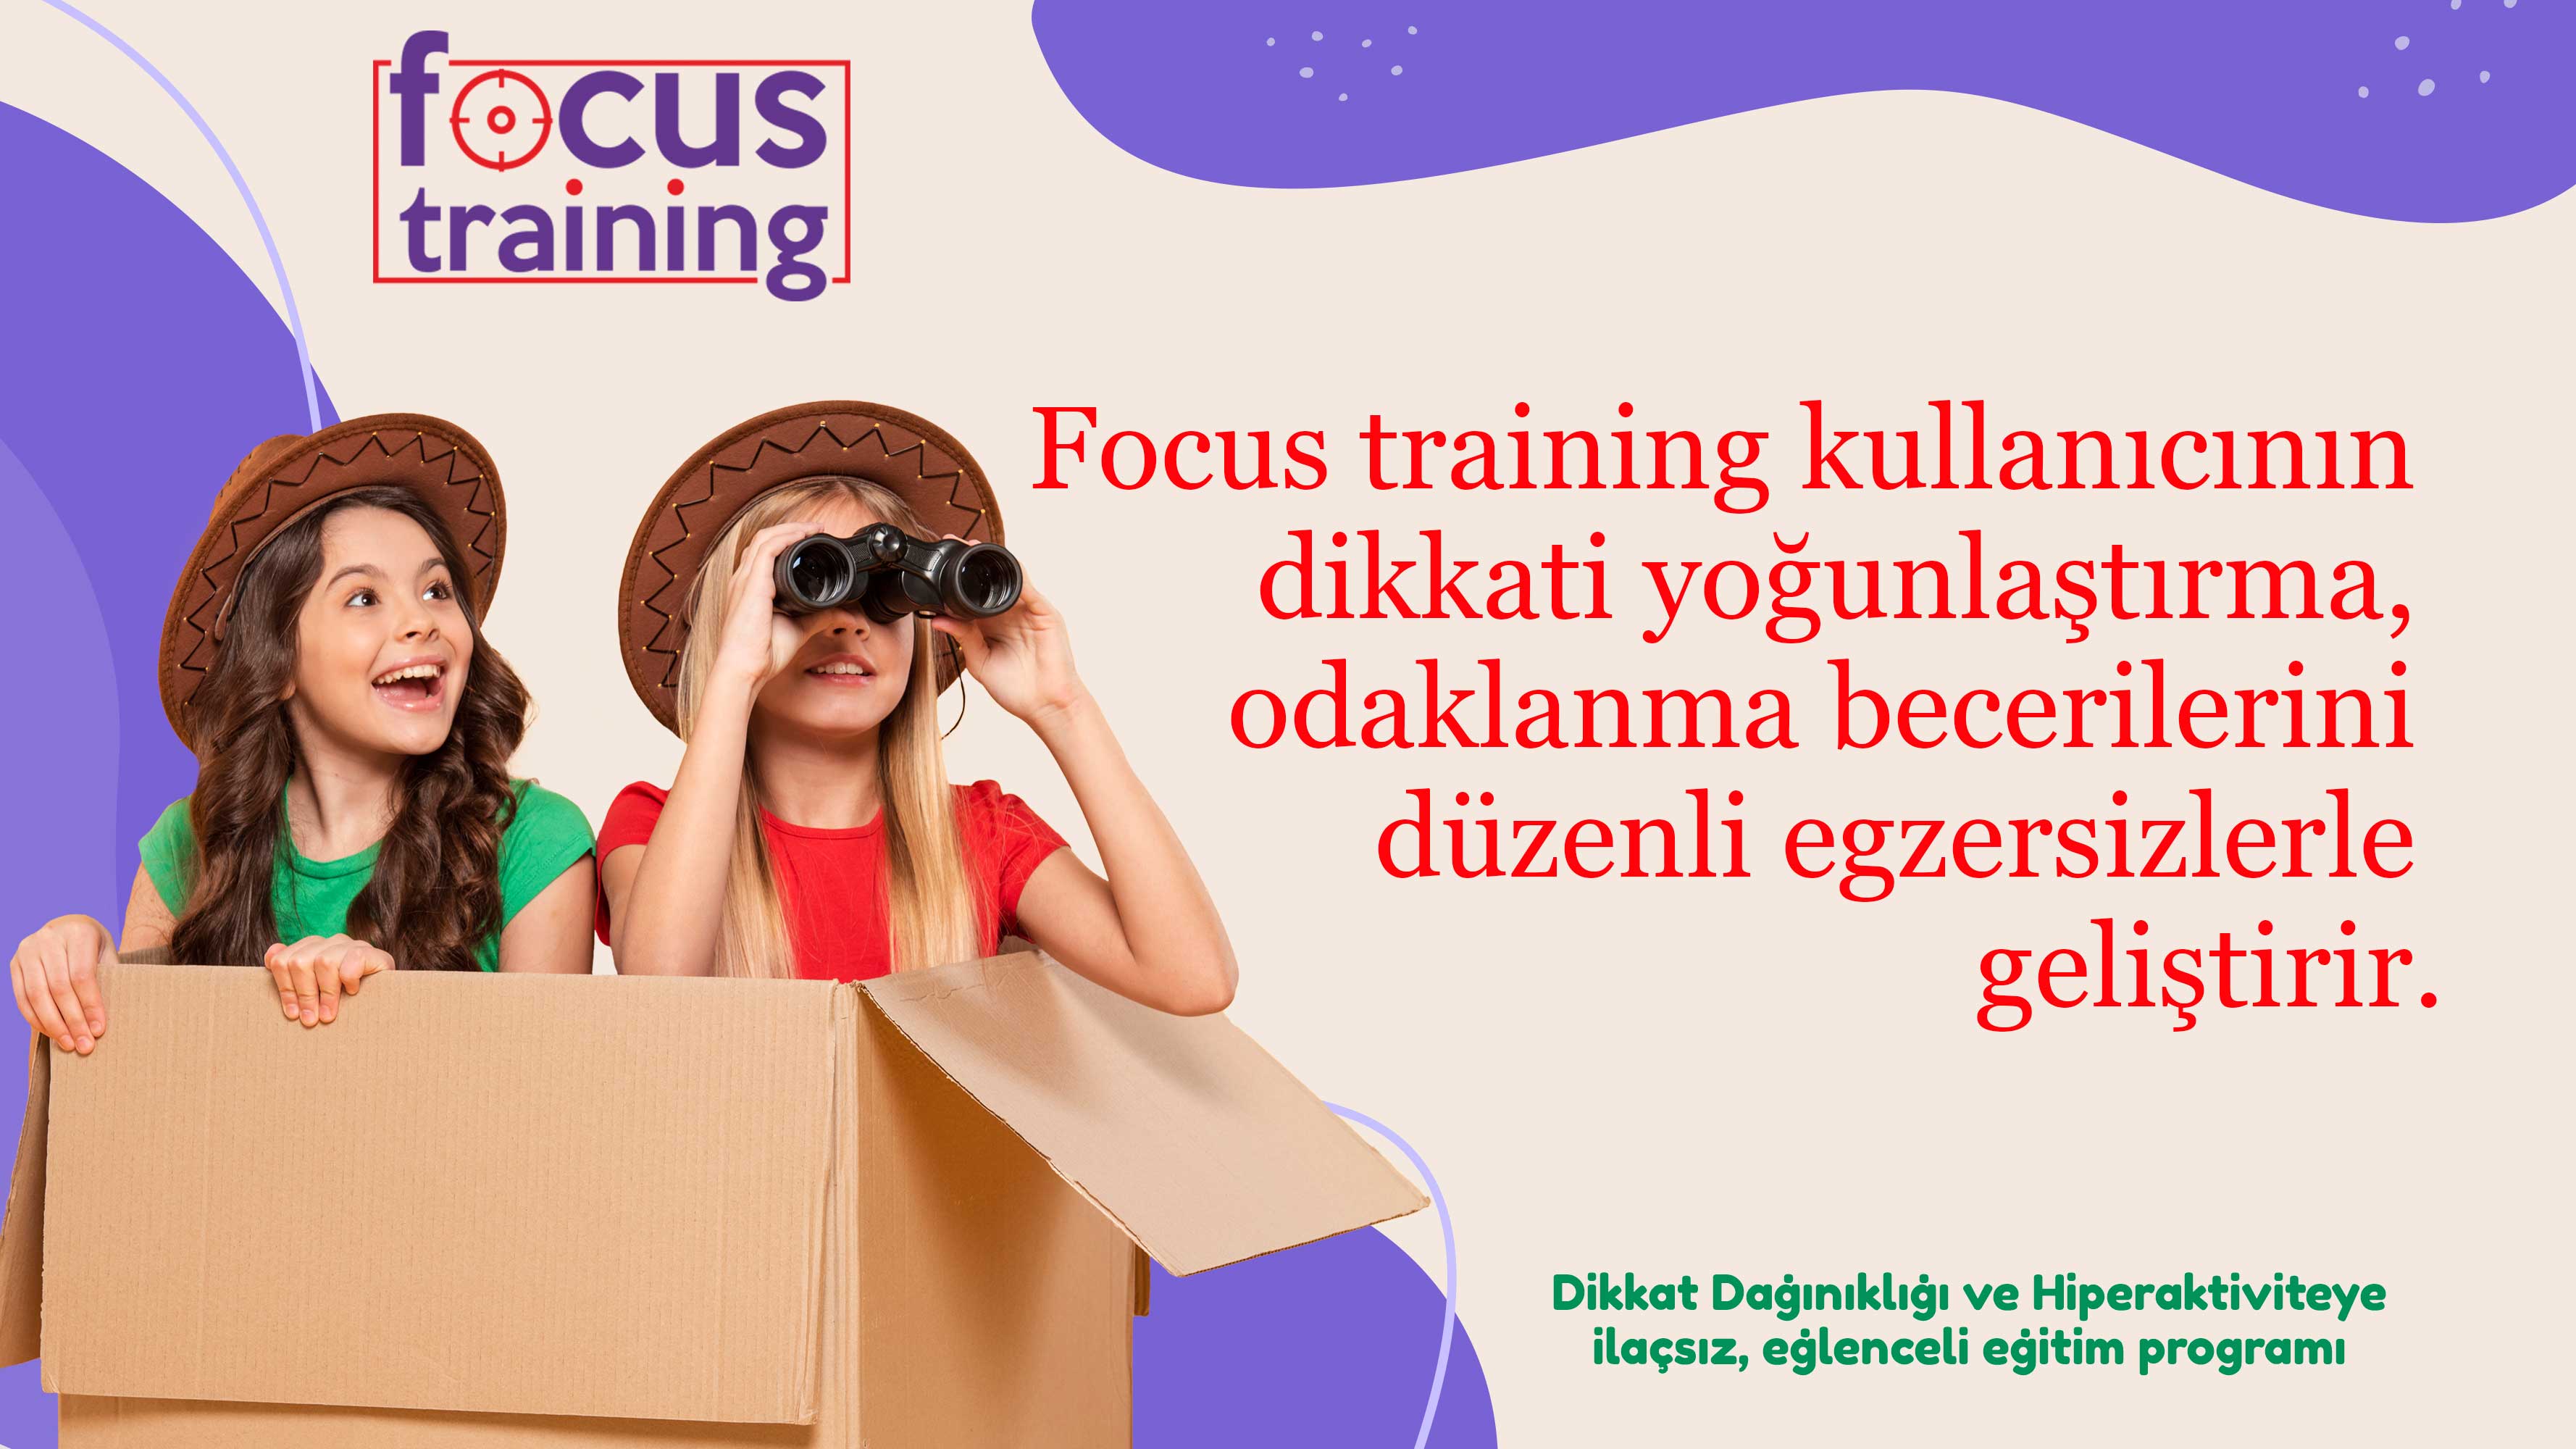 Focus Training Dikkat Dağınıklığı,Dikkat Eksikliği,Hiperaktivite,Disleksi ve Öğrenme Güçlüğüne Eğlenceli Çözüm. İlaçlar son çare olmalı.